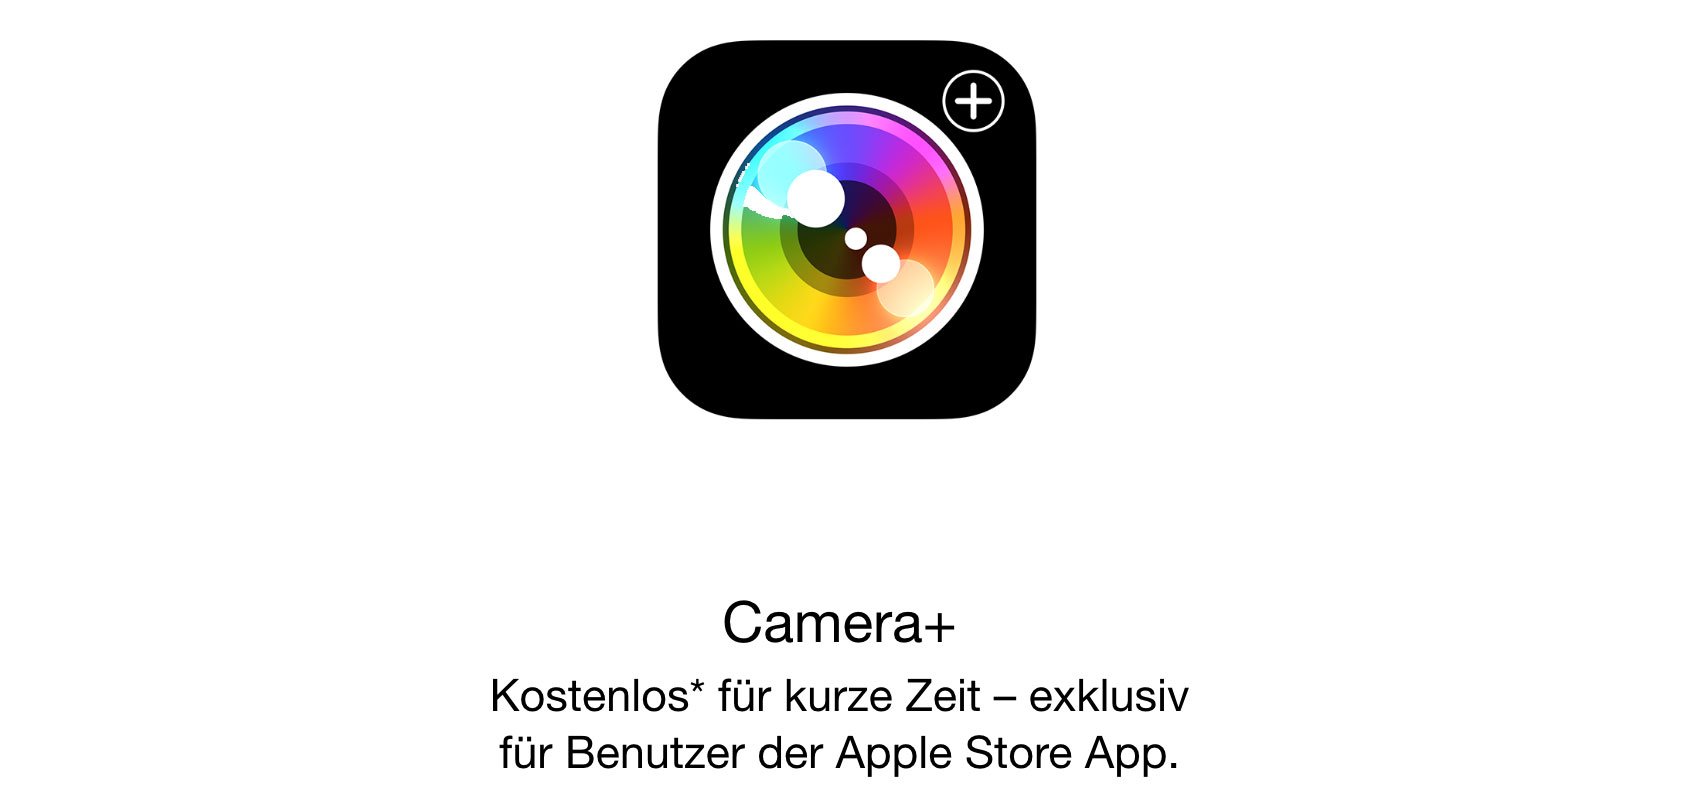 Camera+ heute kostenlos: Foto-App fürs iPhone mit iOS 8 Support! 3